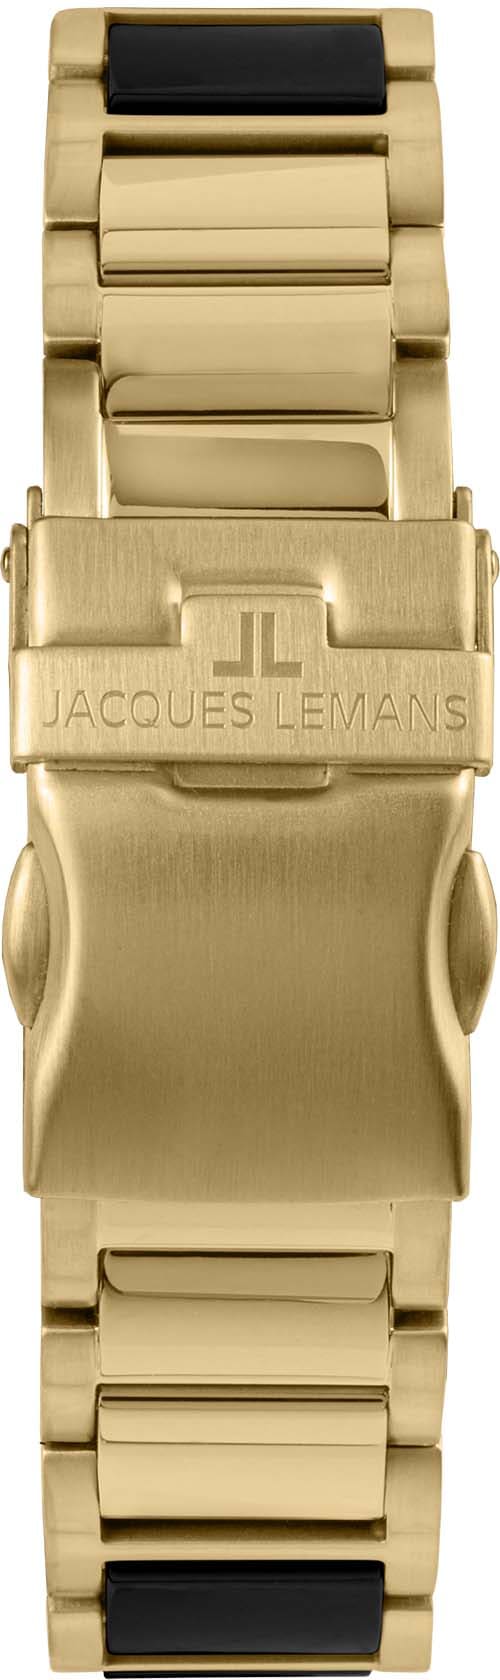 Jacques Lemans Keramikuhr »Liverpool, 42-12G« bequem bestellen